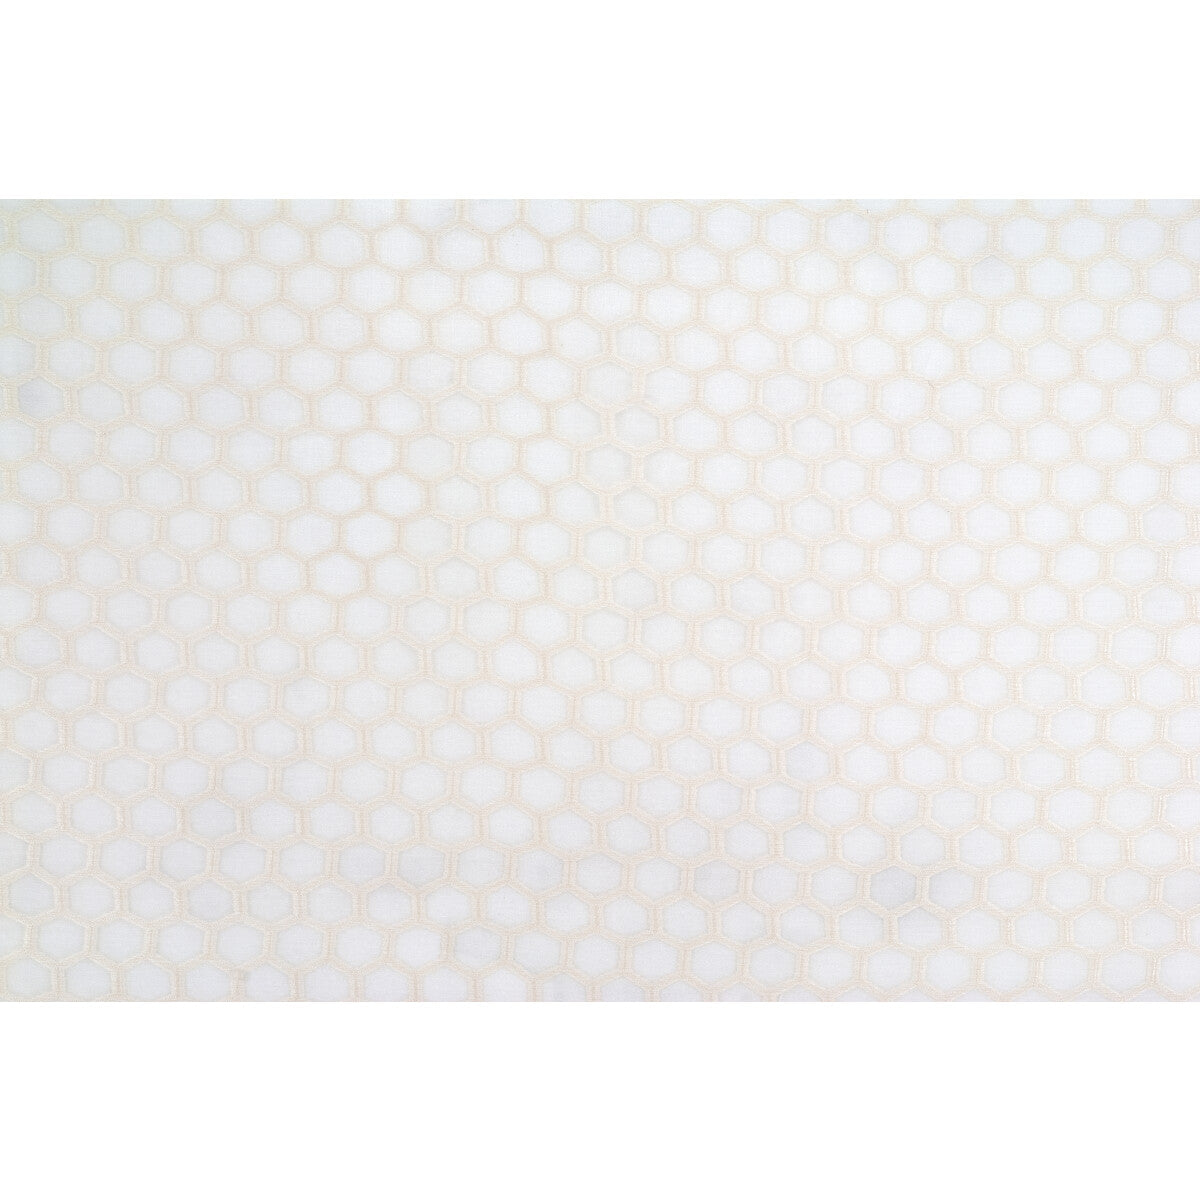 Kravet Basics fabric in 4298-1 color - pattern 4298.1.0 - by Kravet Basics